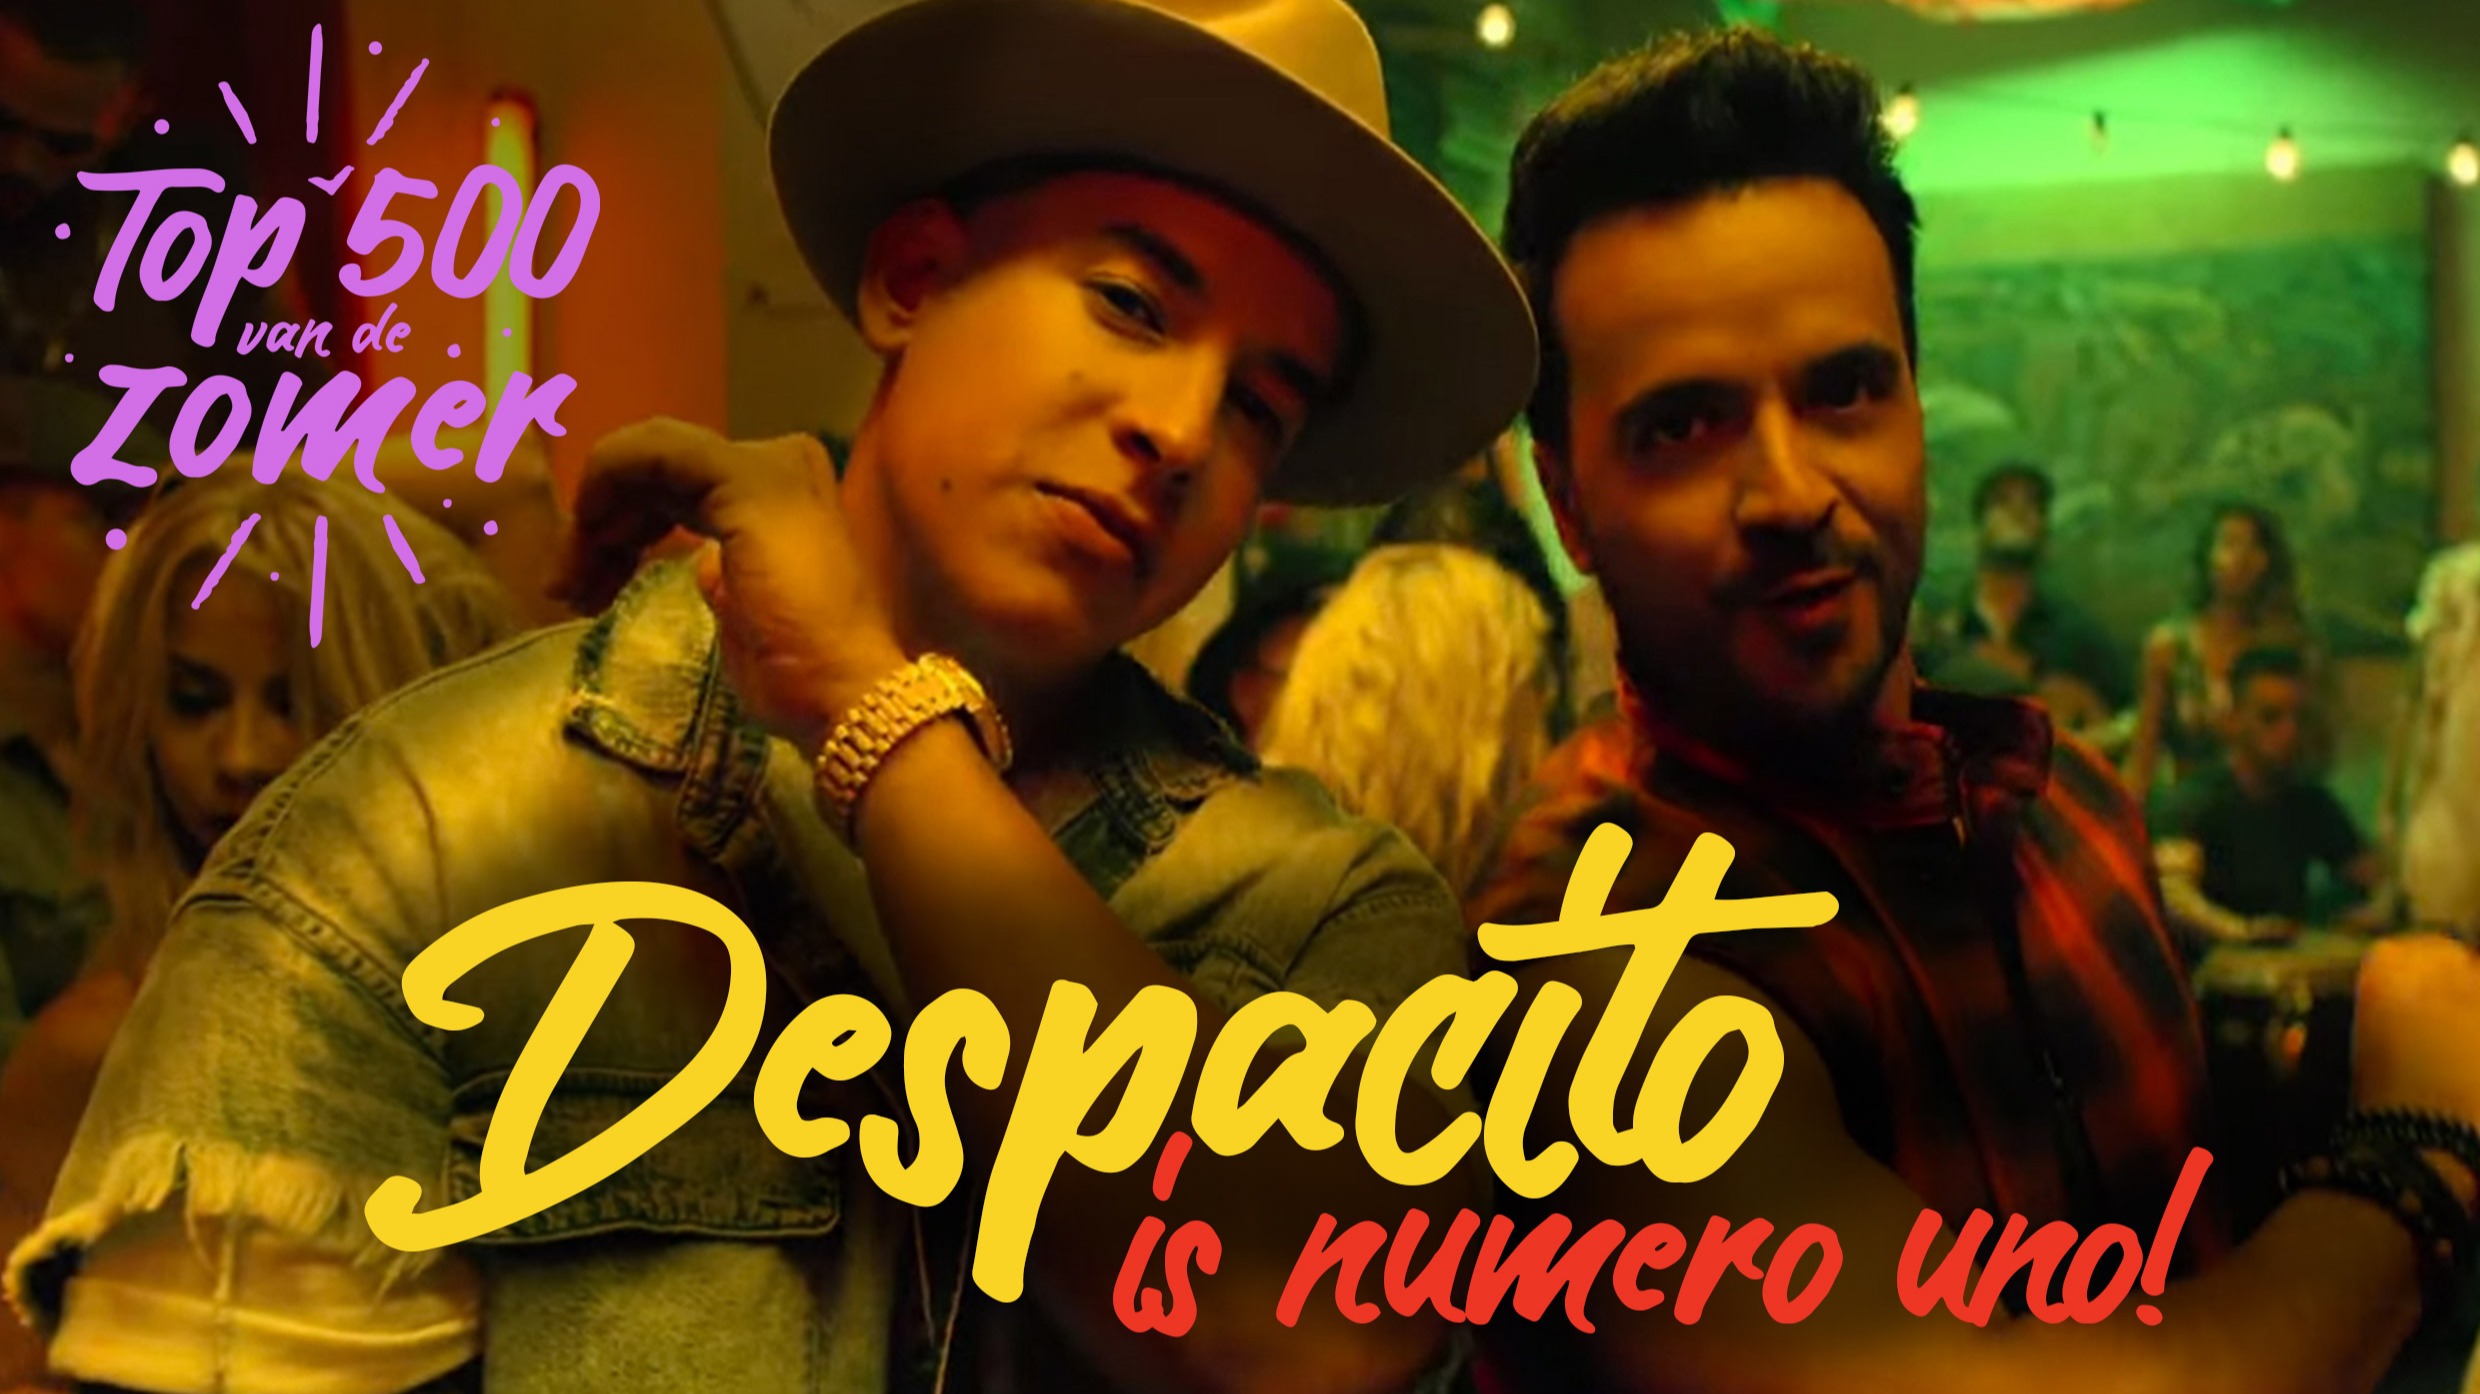 Despacito   top 500 van de  zomer  1 